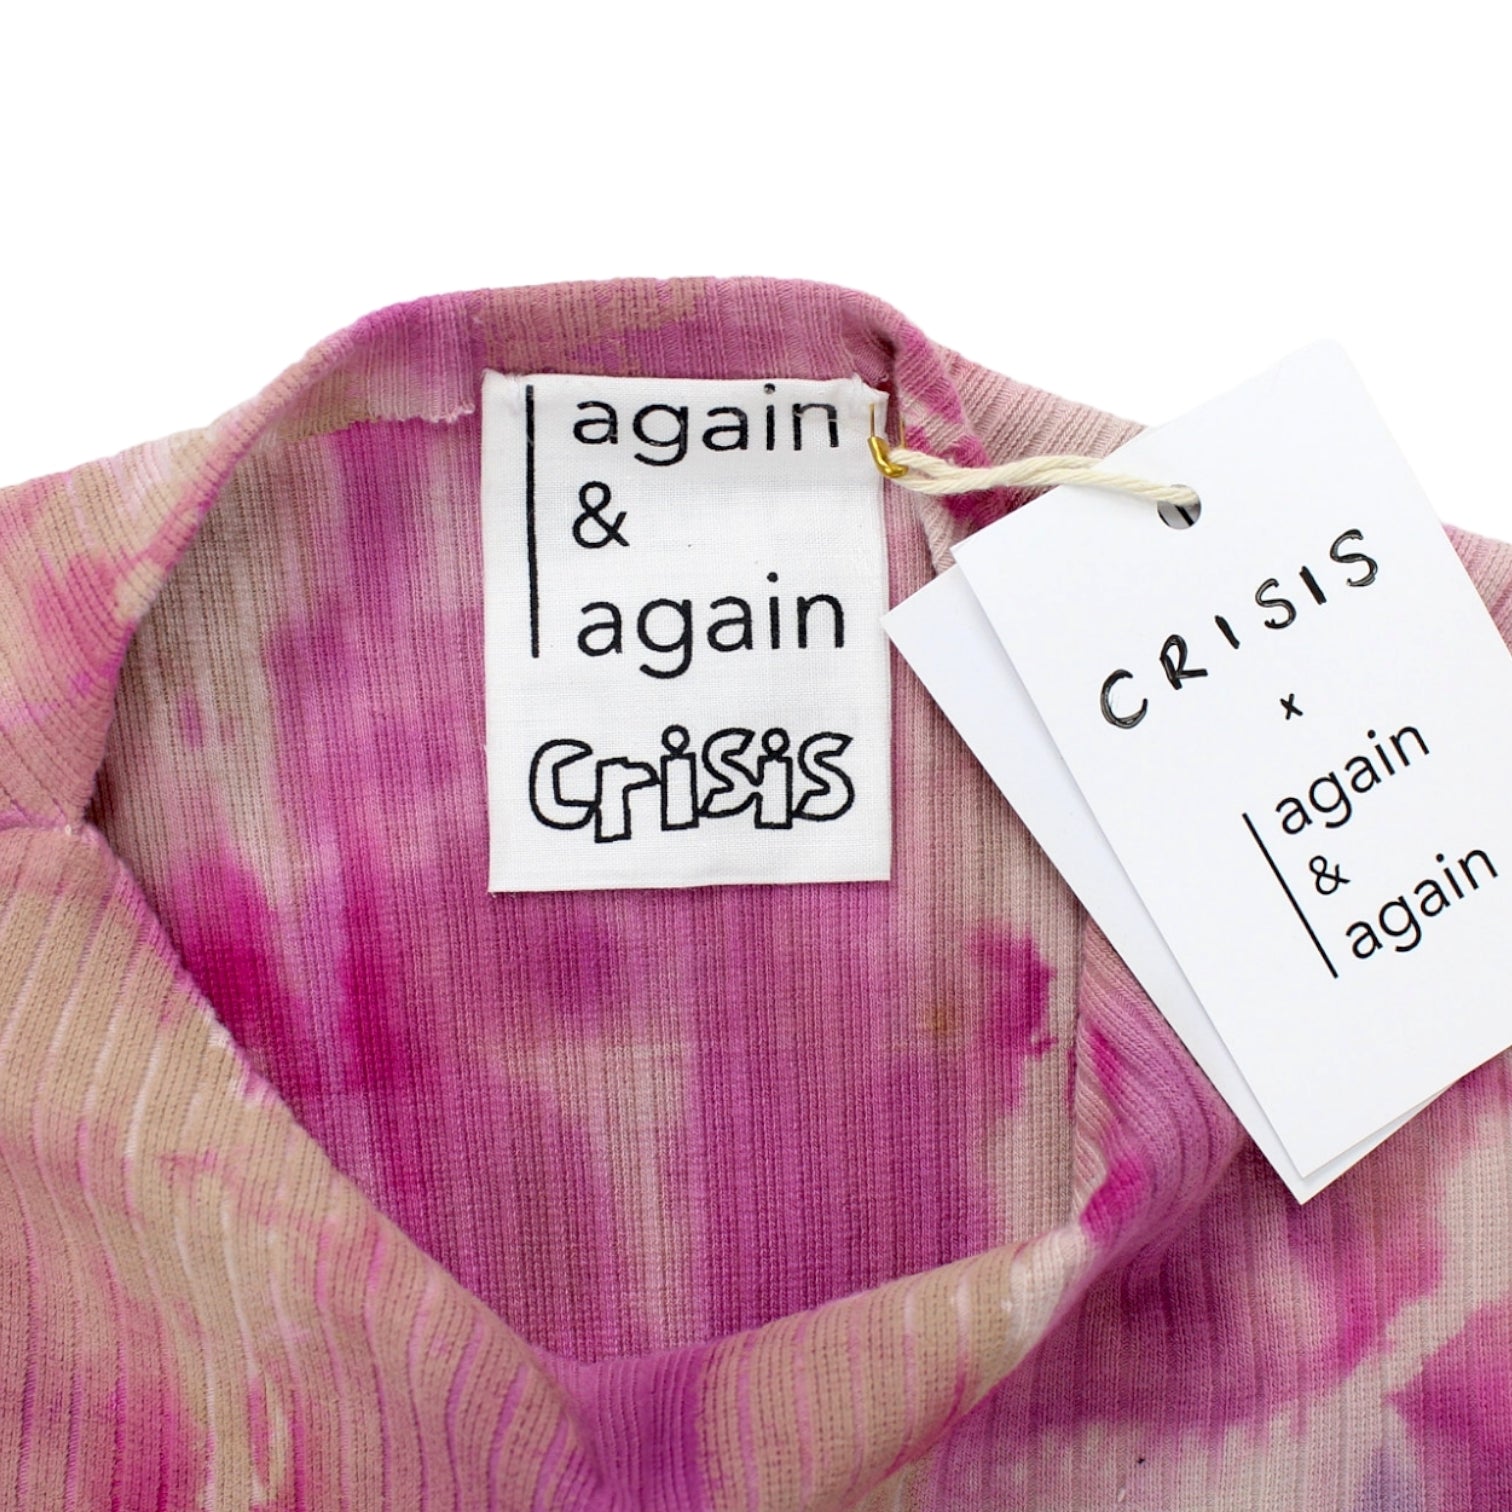 Again & Again X Crisis Bright Pink Tunic